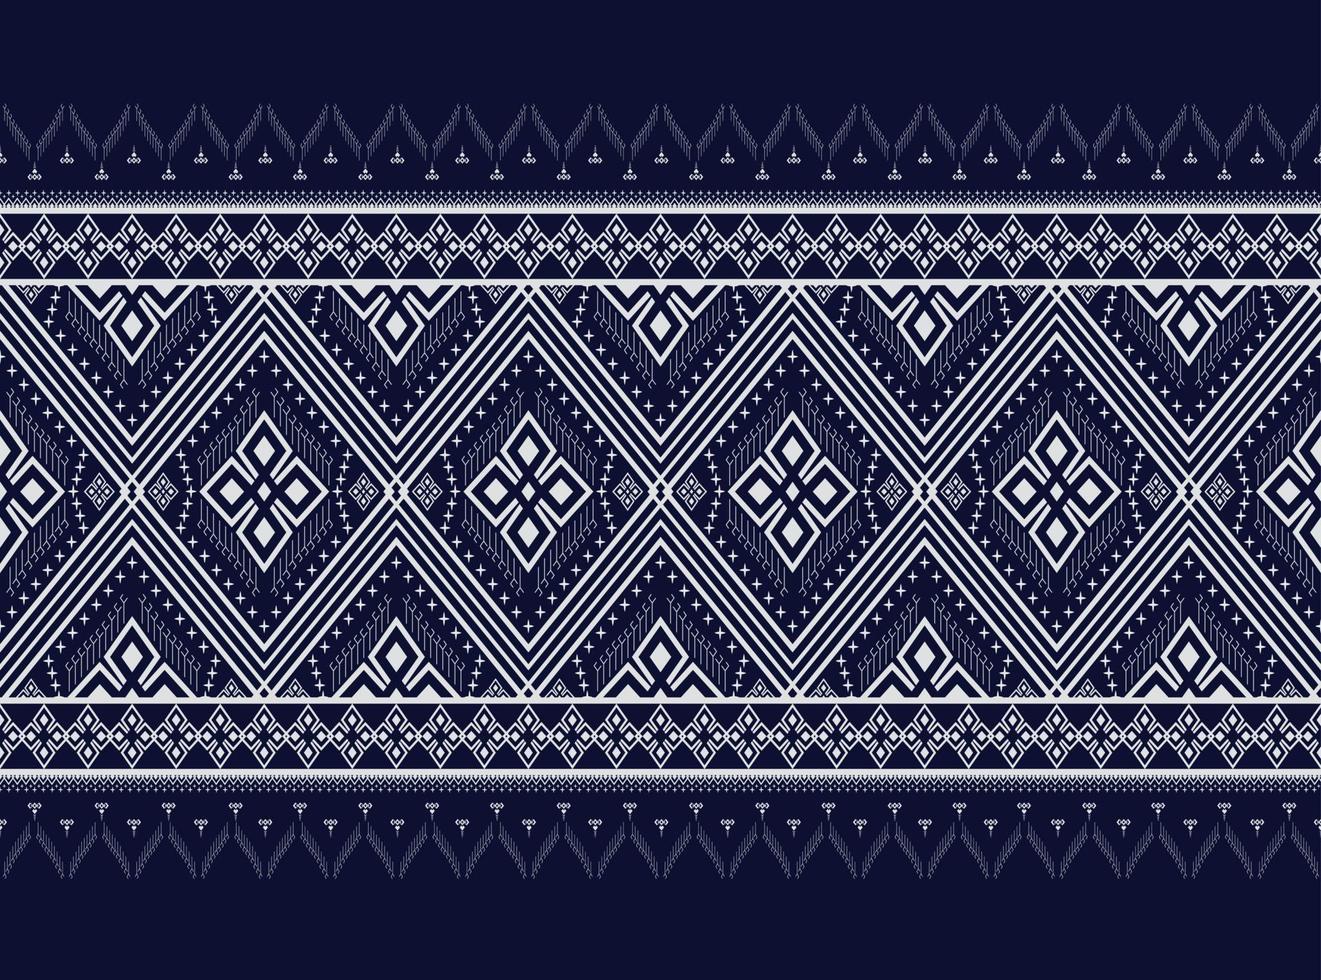 mörkblå geometriska etniska mönster traditionella designtexturer för kjol, matta, tapeter, kläder, omslag, batik, tyg, kläder, lakan, design av mörklila trianglar vektorillustration vektor